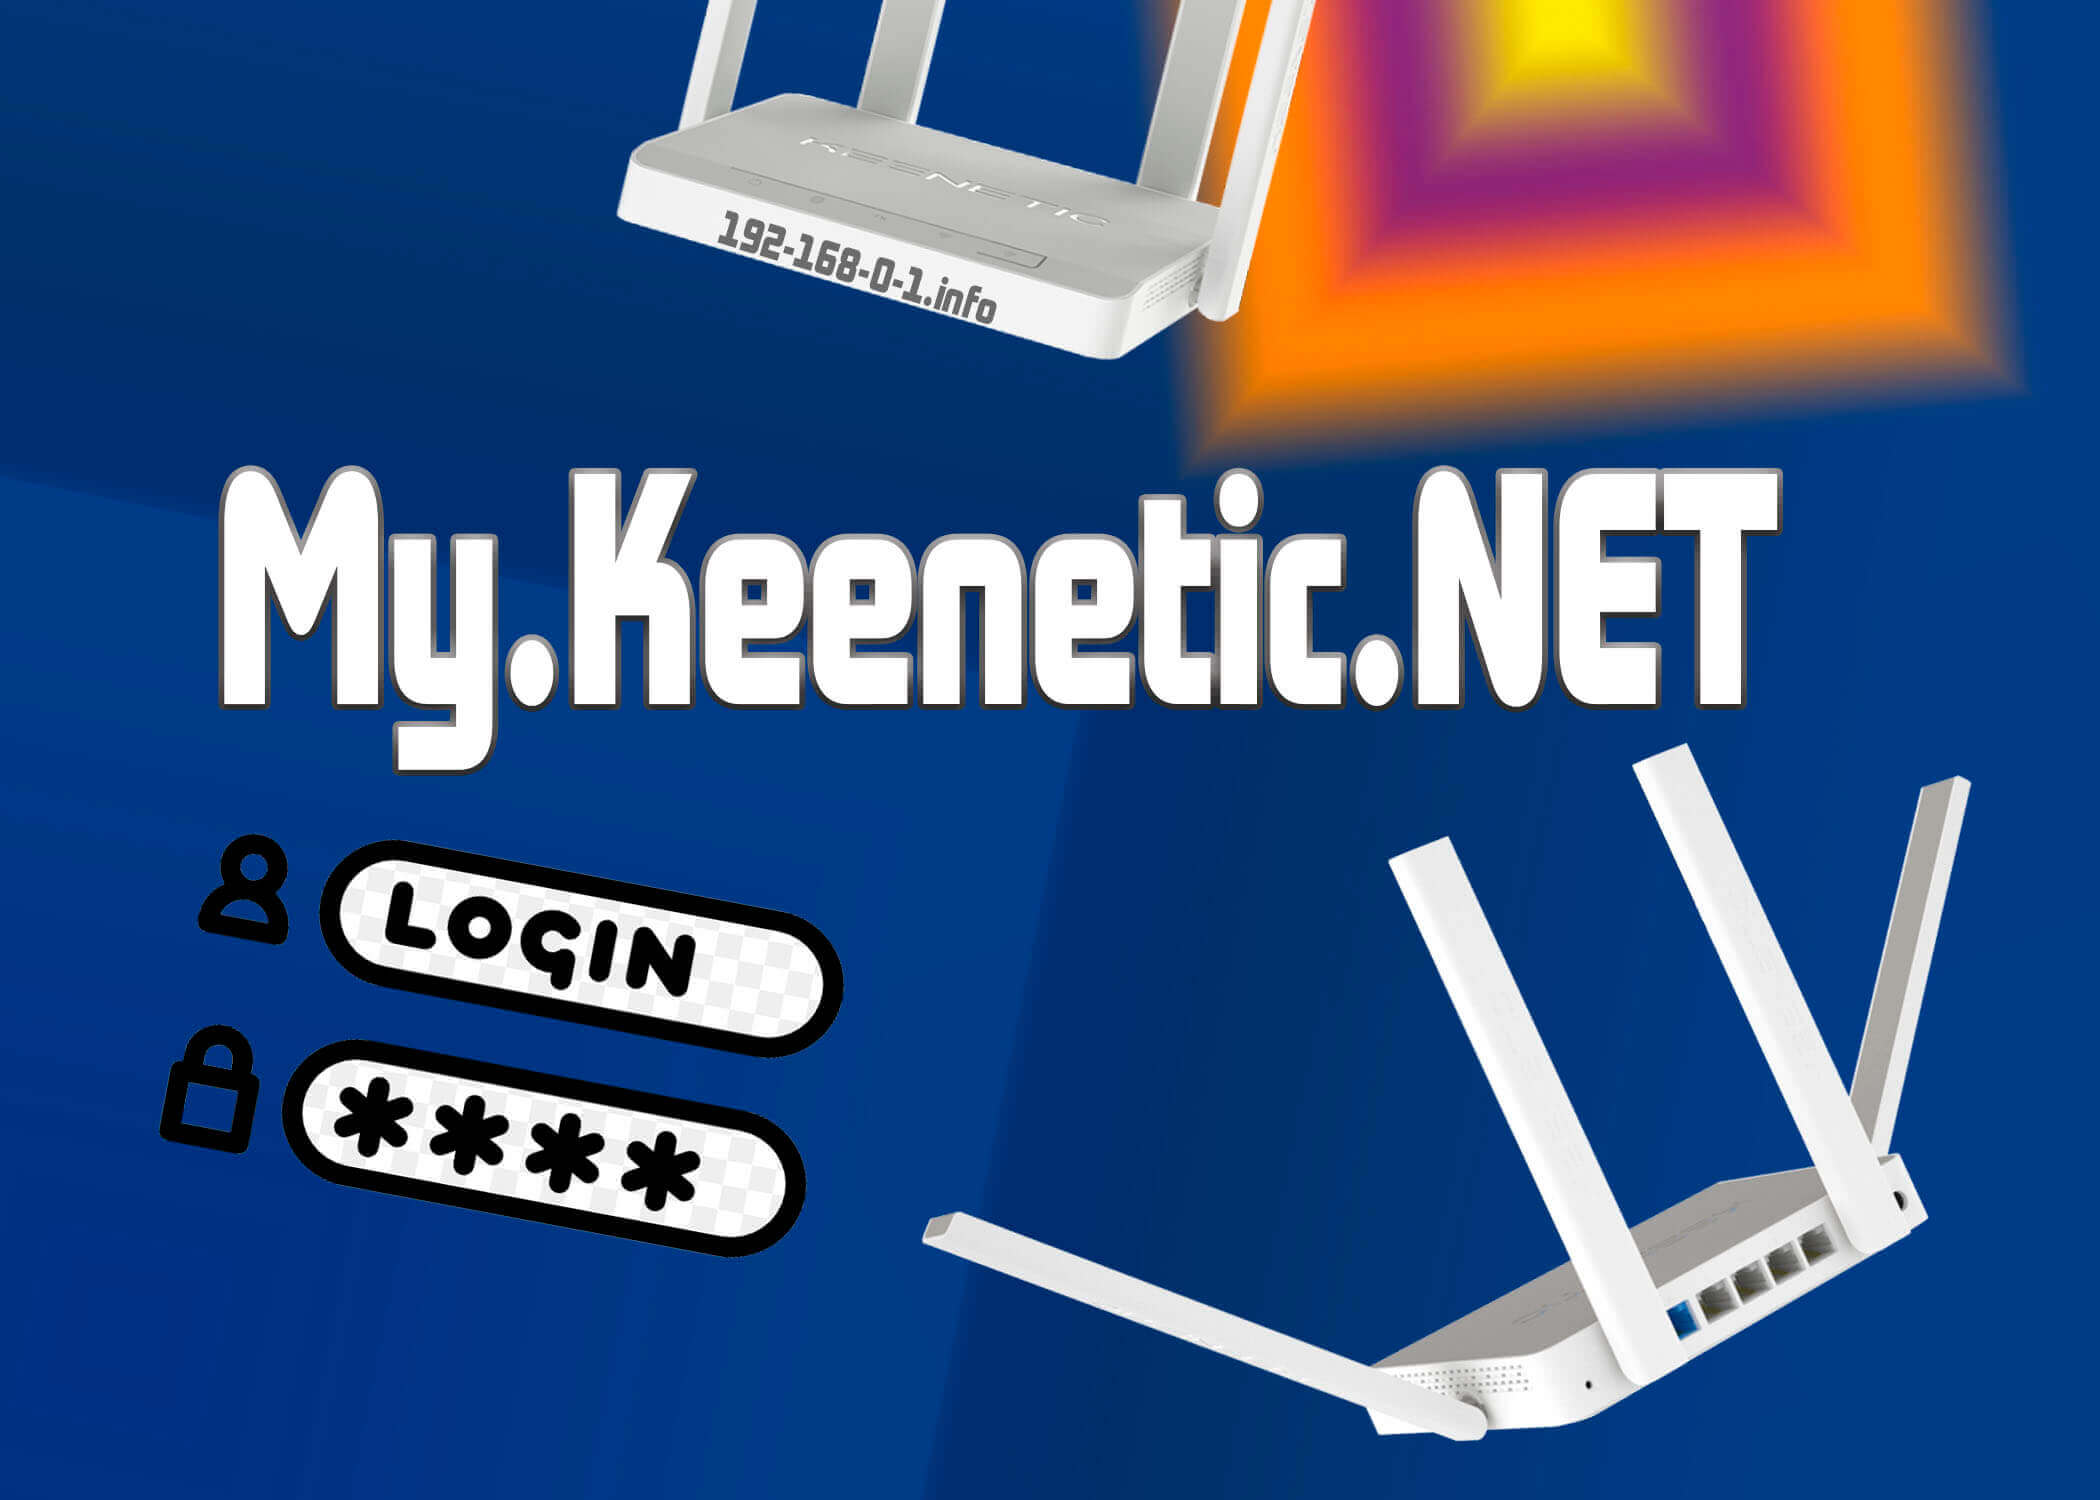 keenetic-login-ip-address.jpg